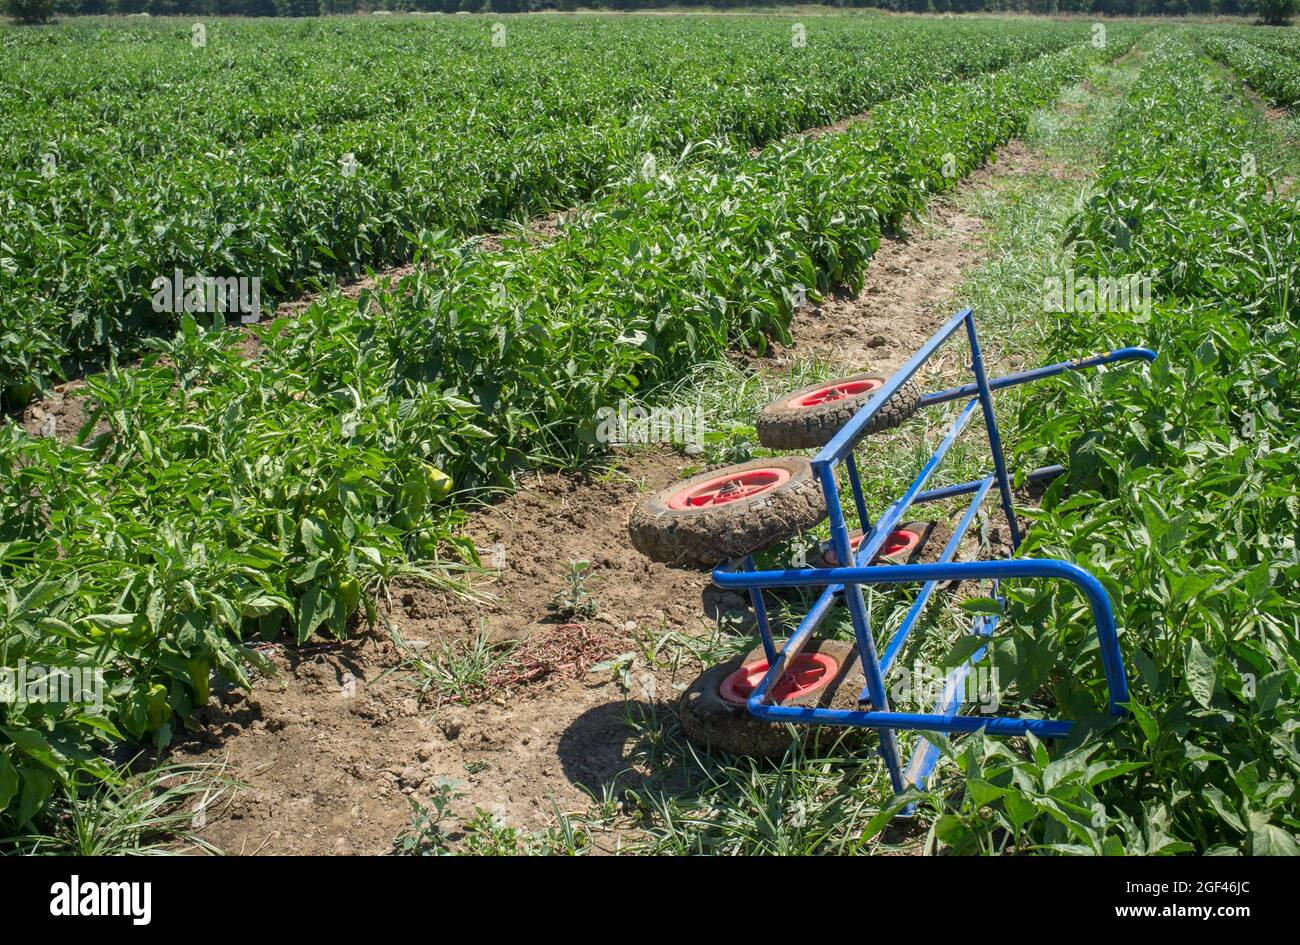 Trole de cosecha sobre surcos de plantación de tomates jóvenes. Equipo de transporte agrícola. Foto de stock